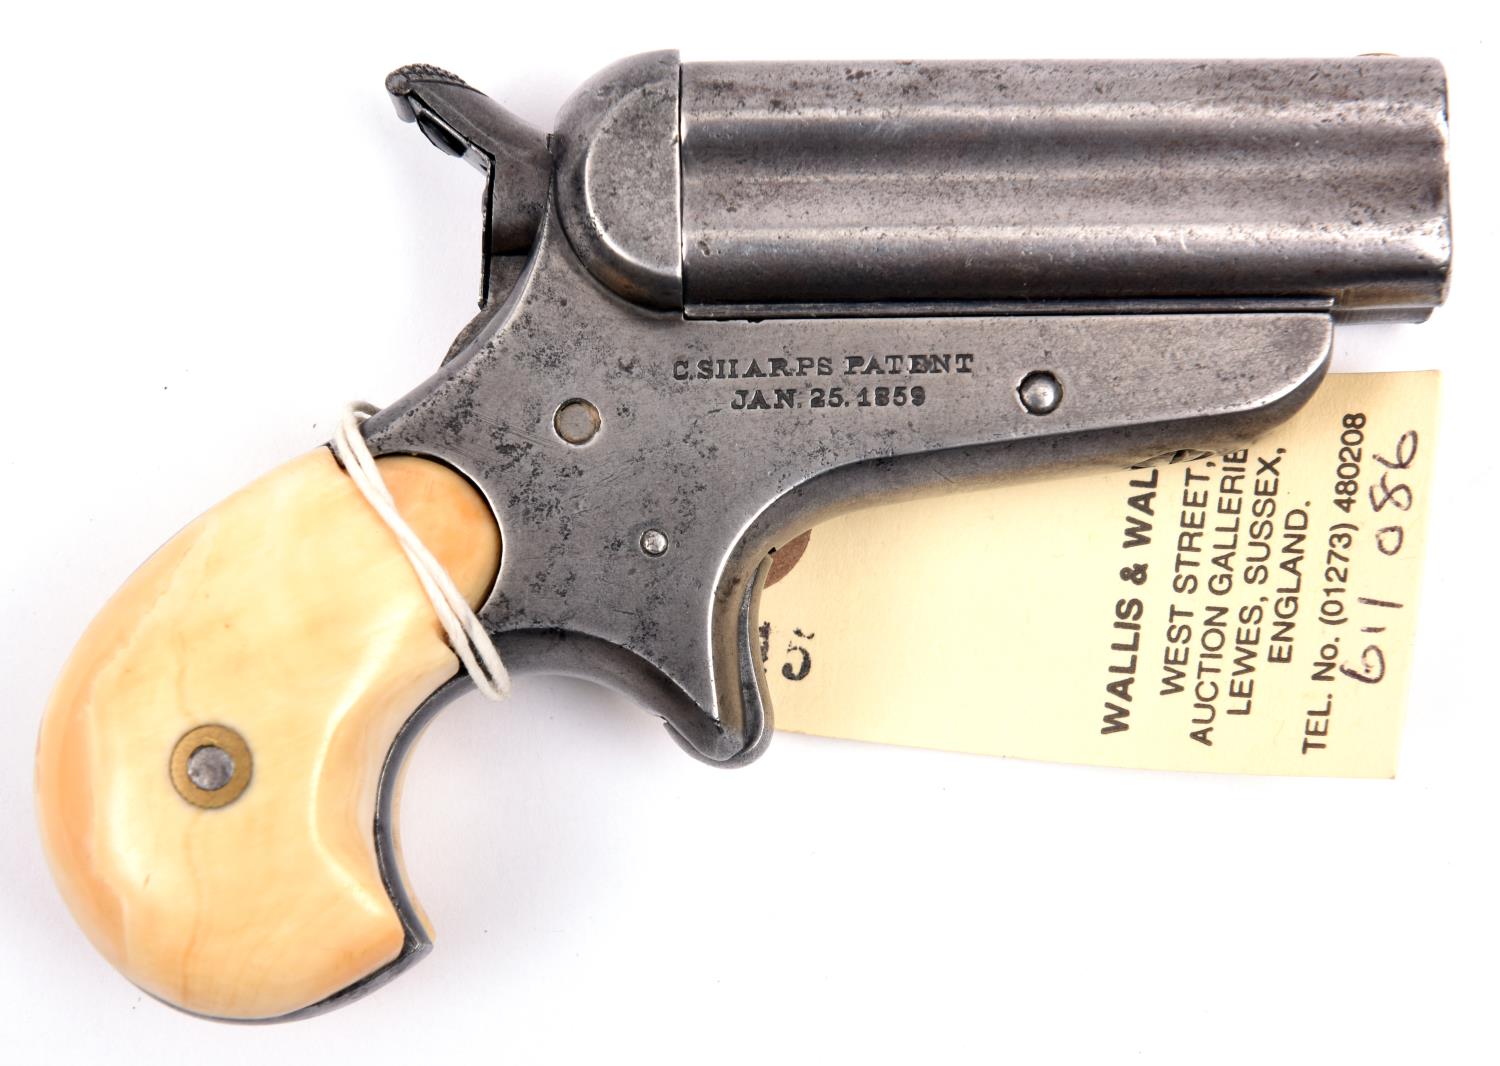 A .32” rim fire Sharp’s model 4A four barrelled pistol, number 368, barrel 2½”, the frame stamped “